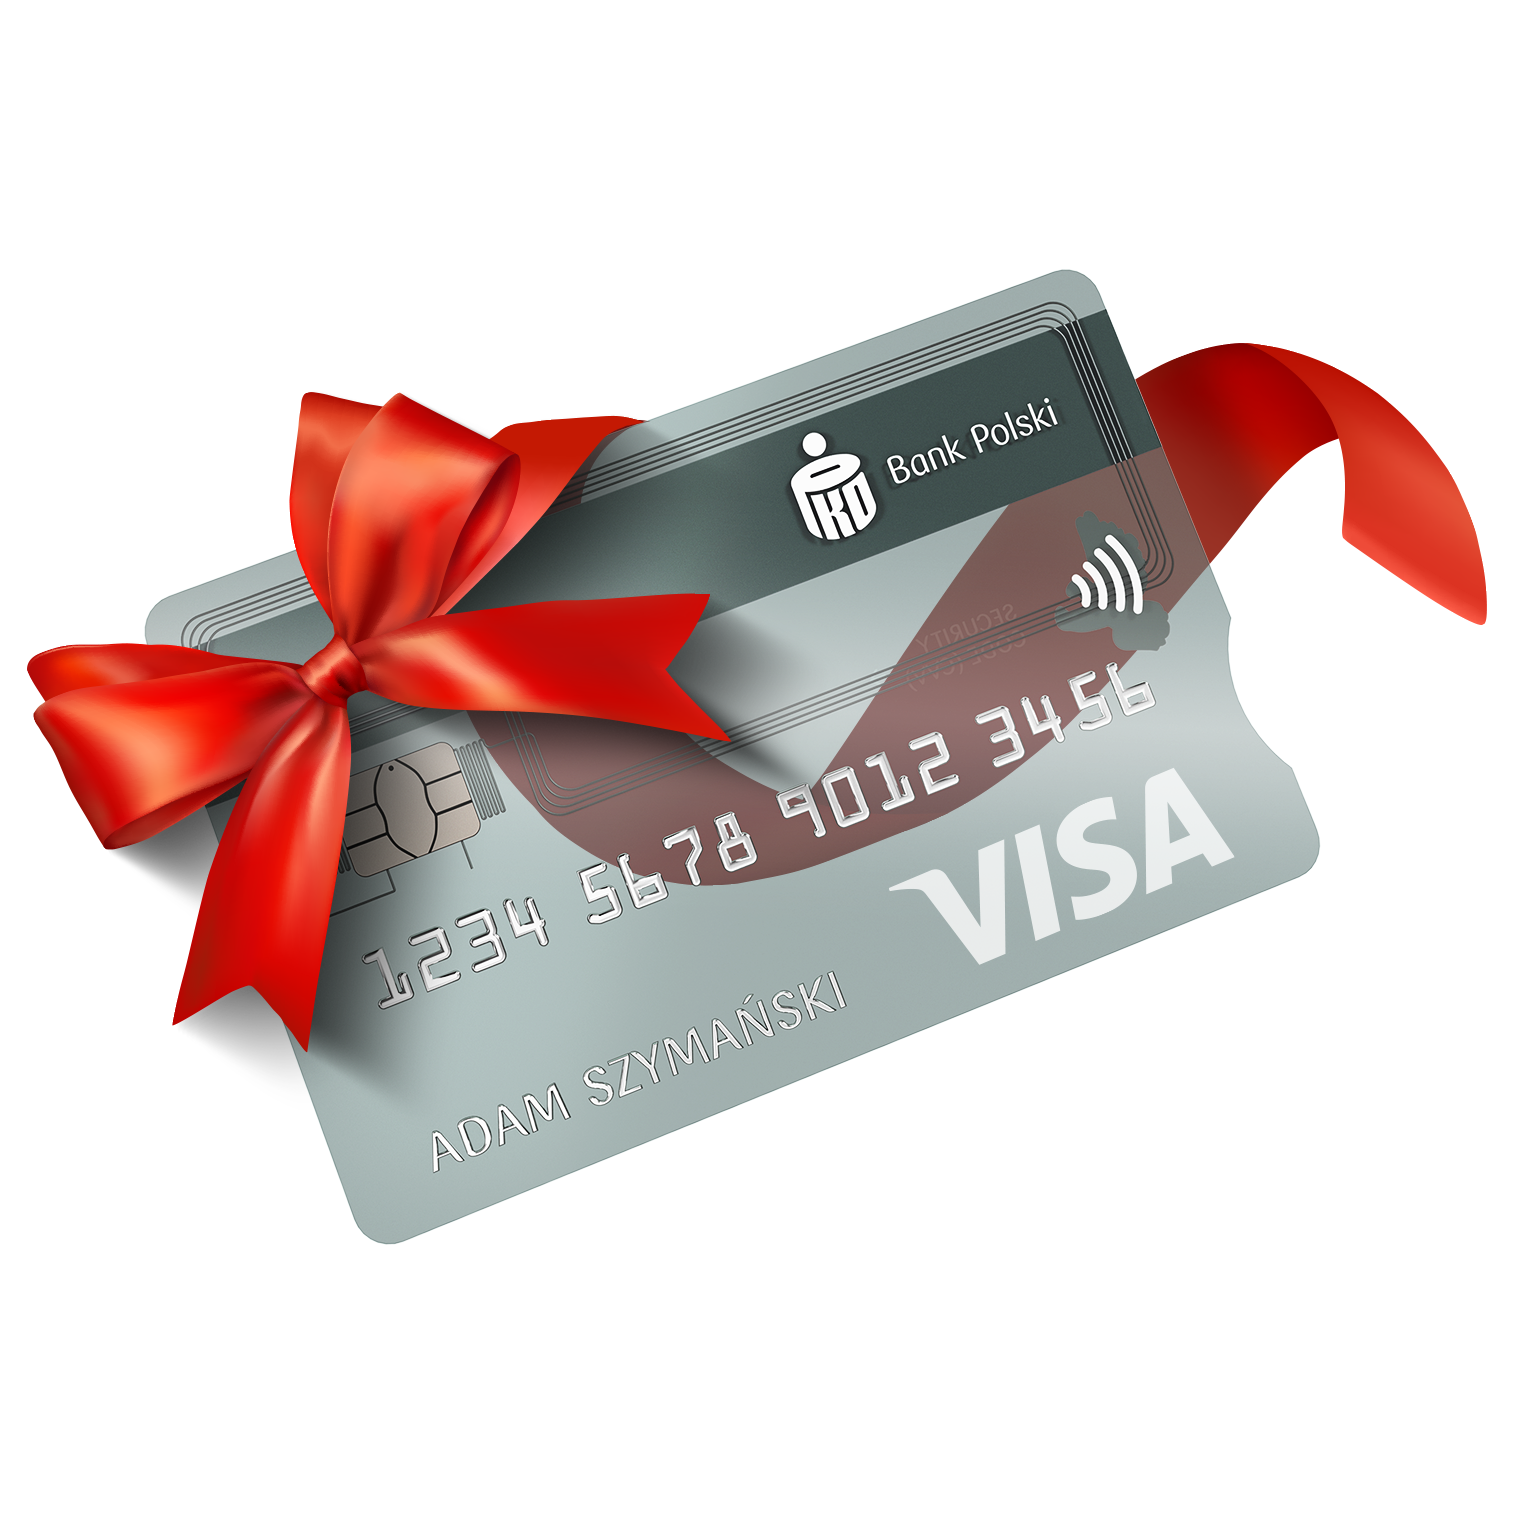 Przejrzysta karta kredytowa od PKO Banku Polskiego - Visa lub Mastercard